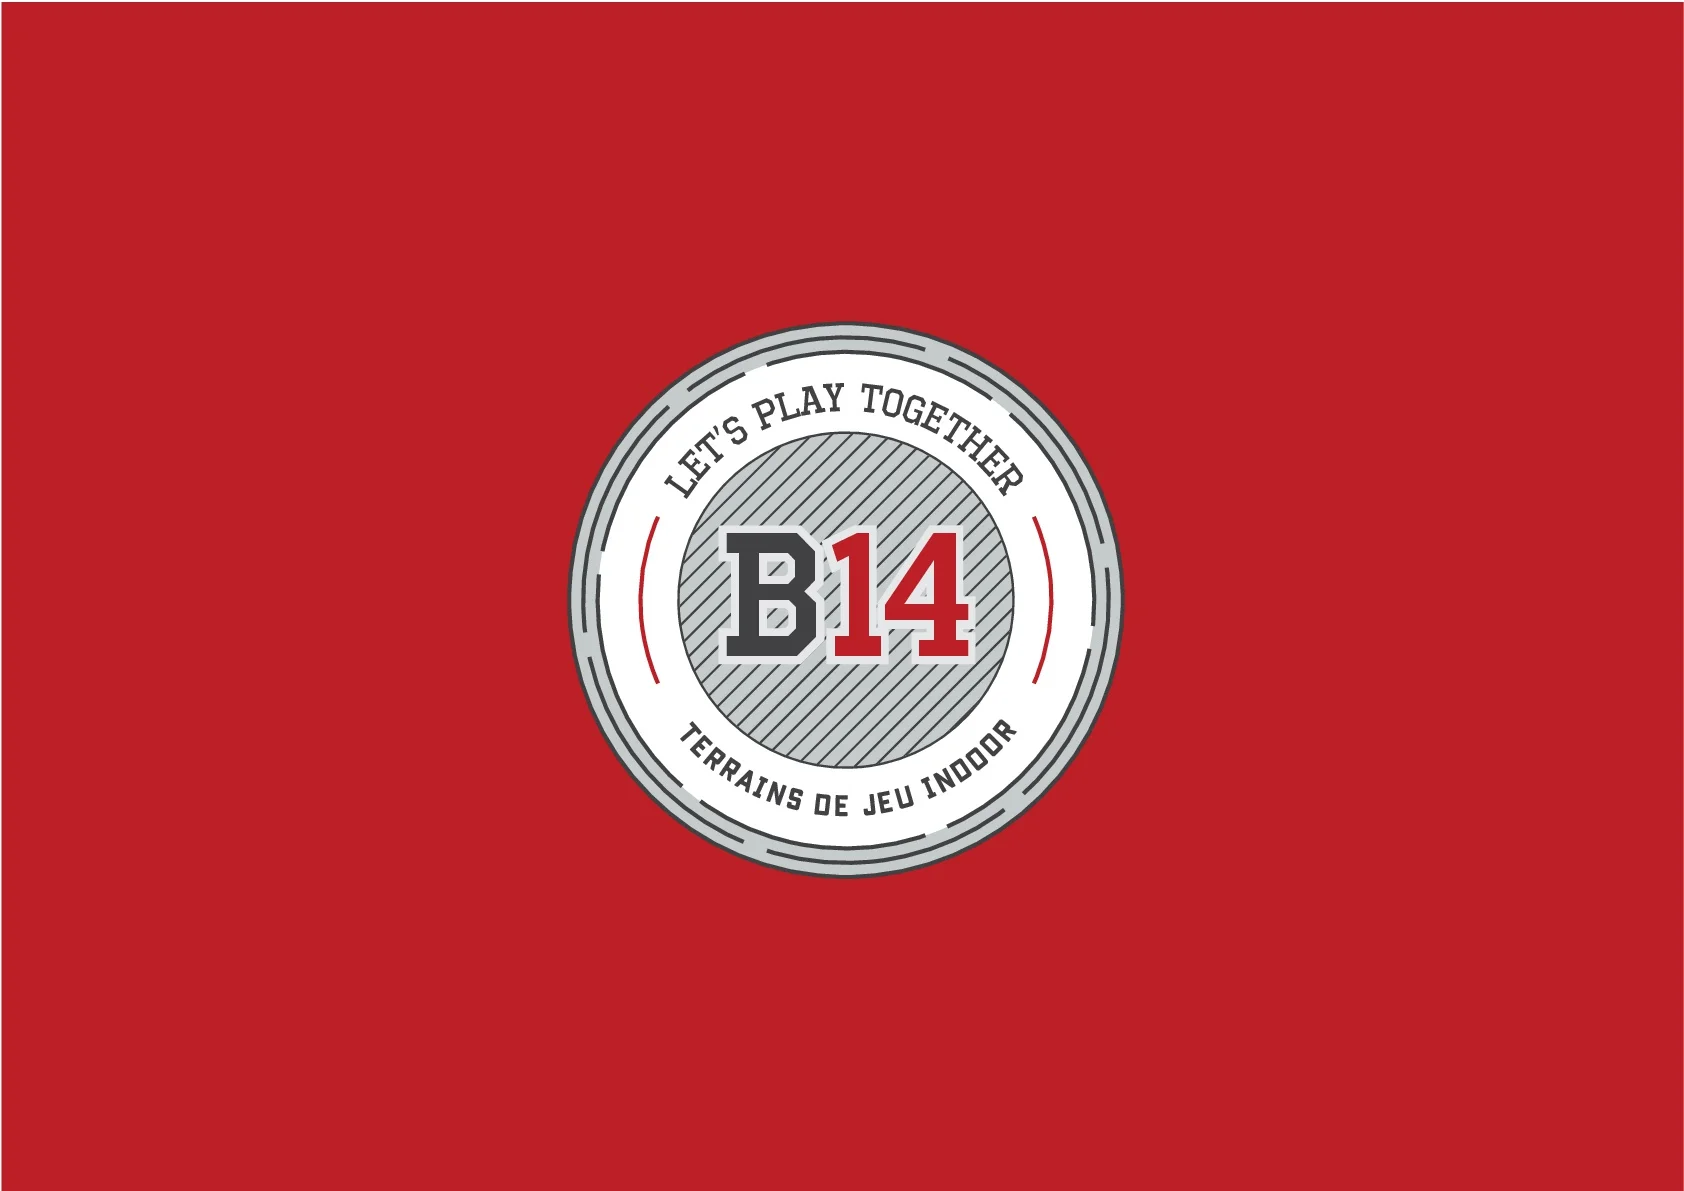 logotip-B14-padel